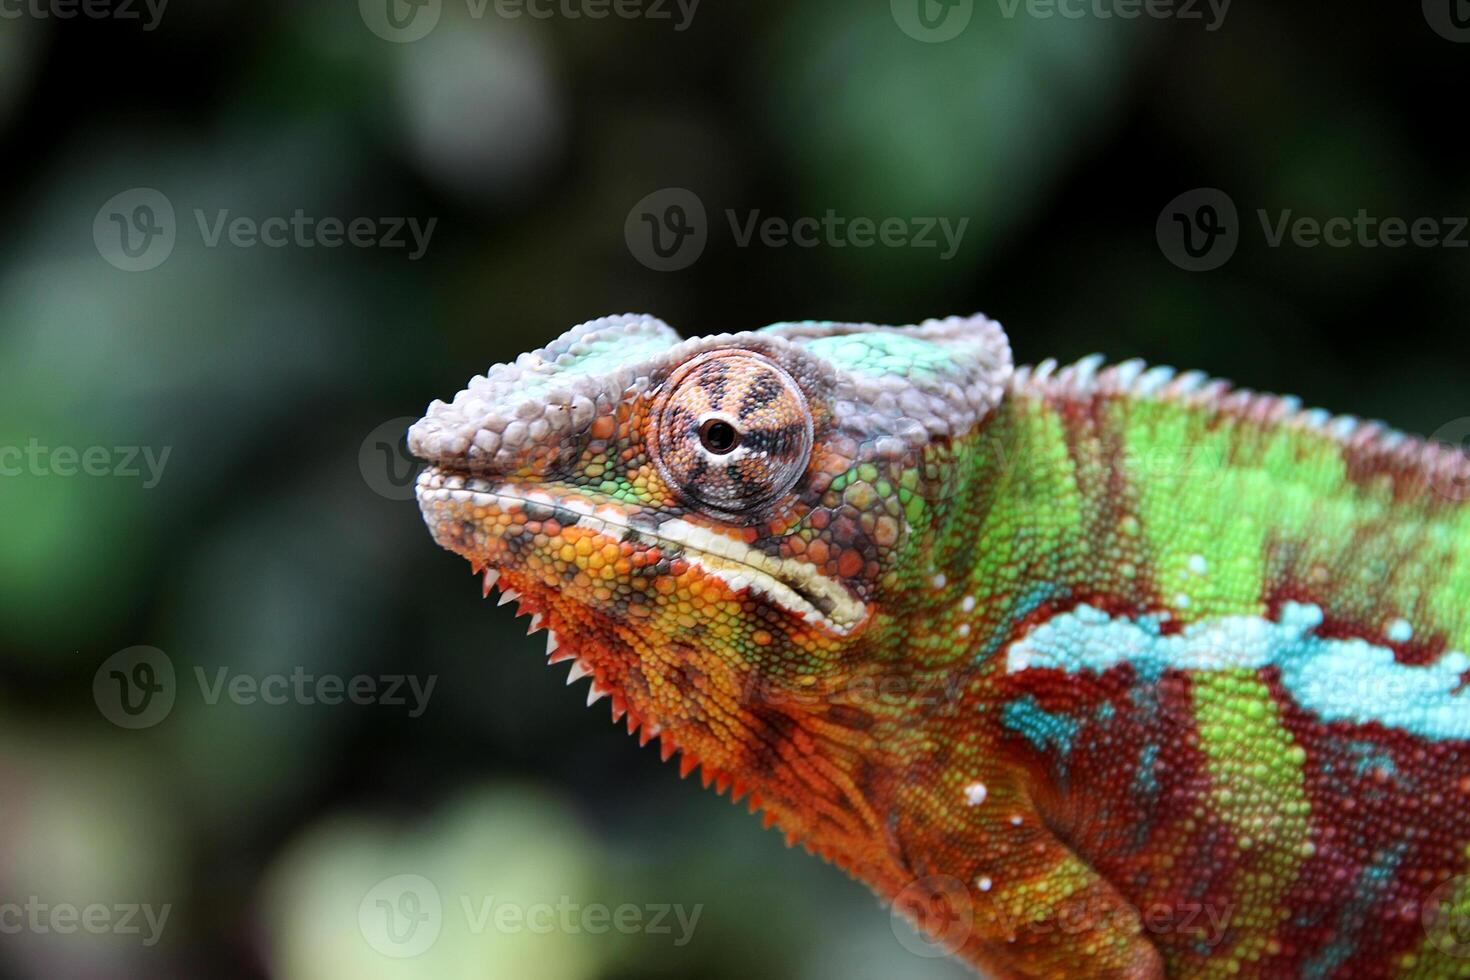 magnifique créature ambilobe panthère caméléon photo